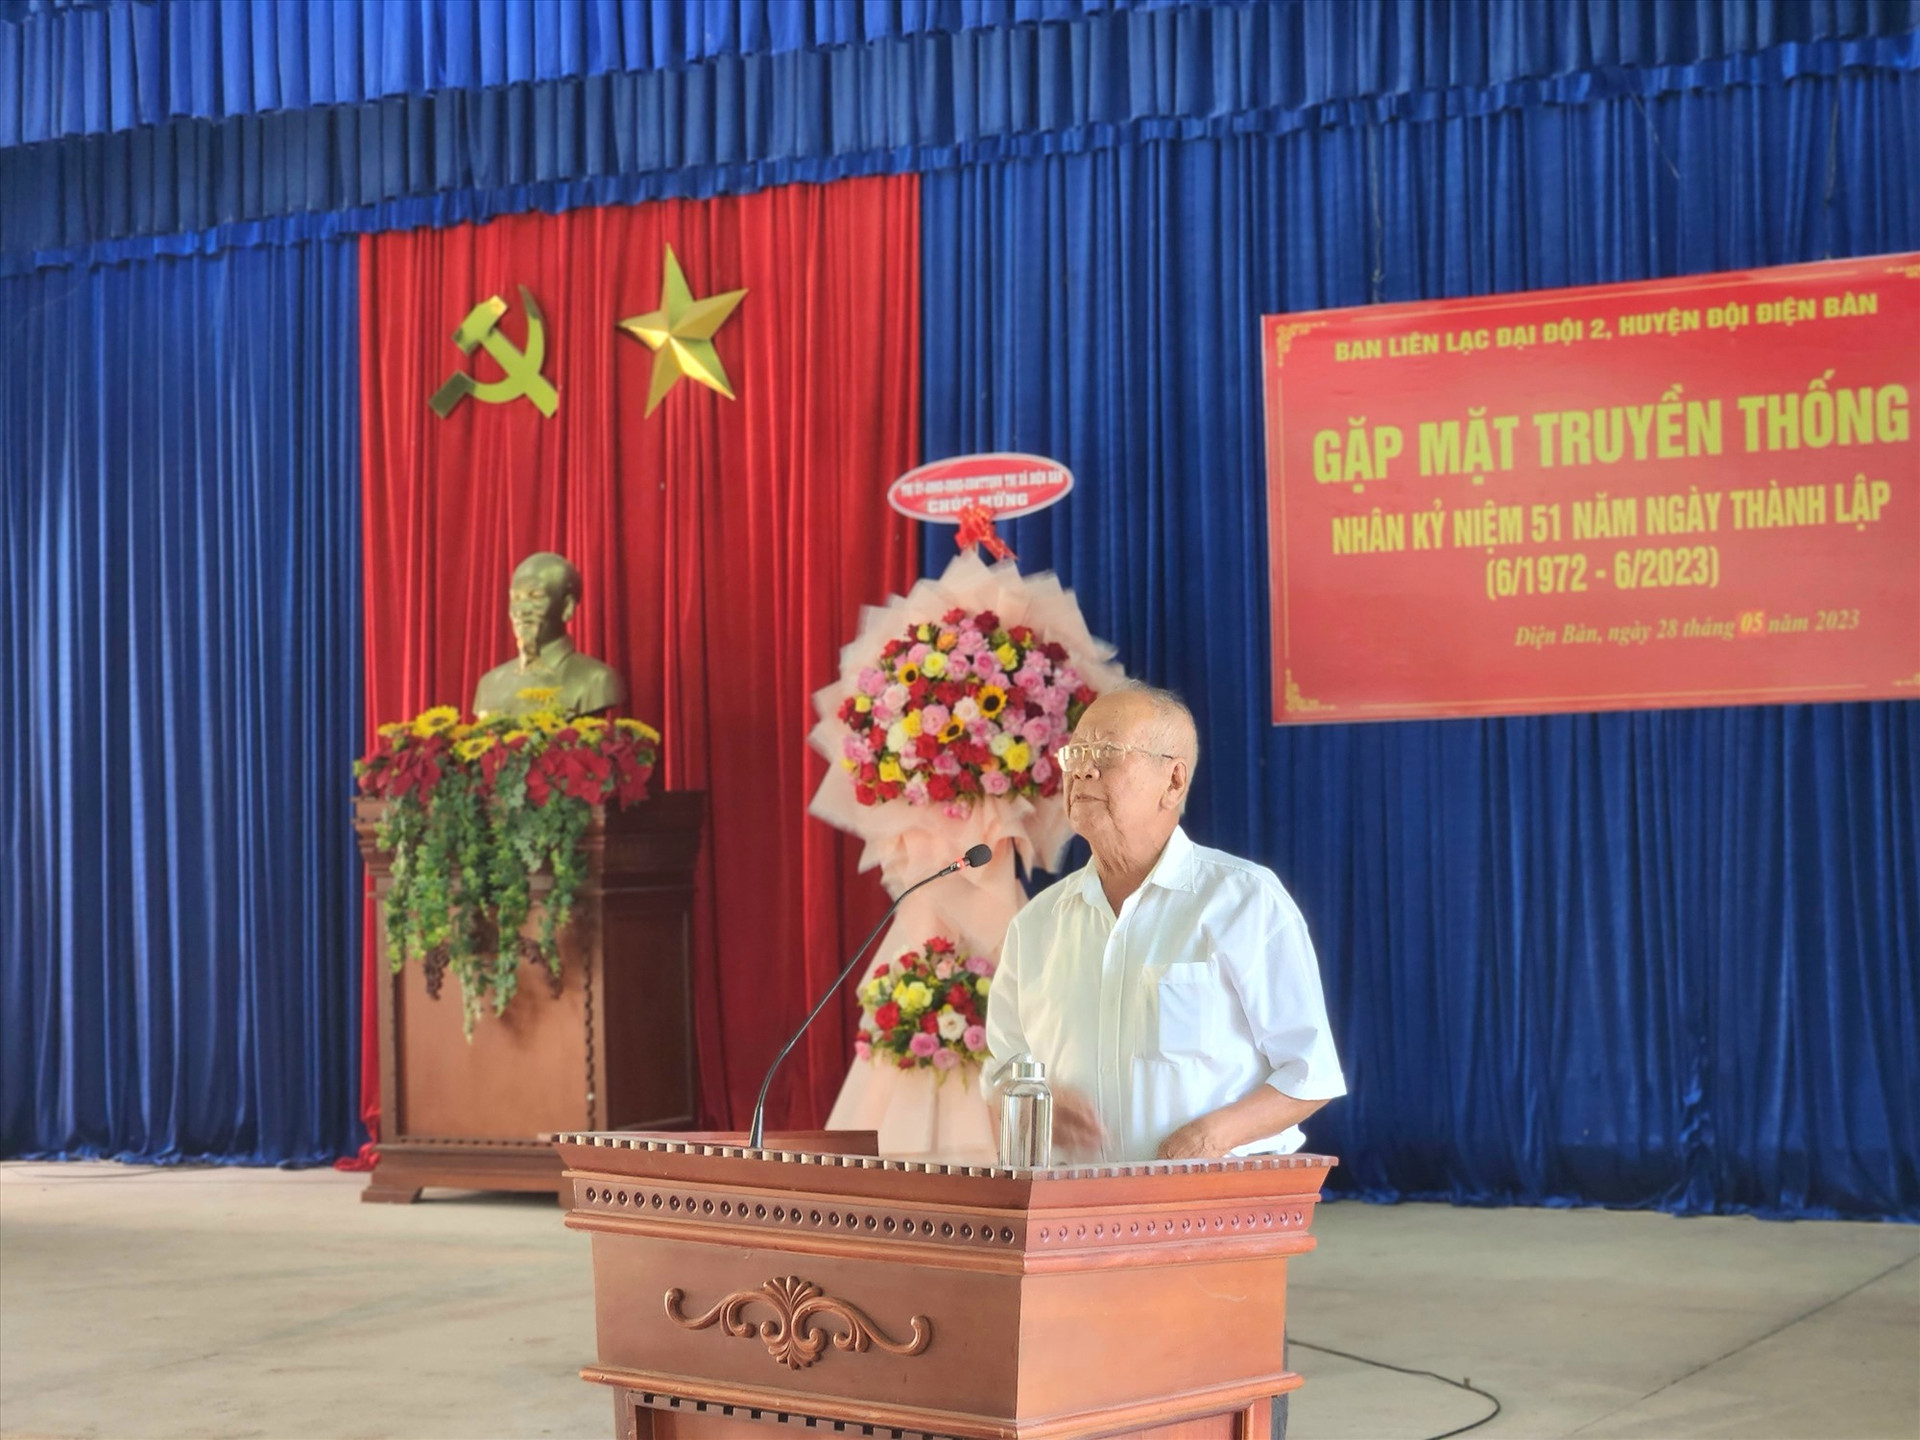 Ông Nguyễn Cây - nguyên Đại đội trưởng Đại đội 2, Huyện đội Điện Bàn phát biểu ôn lại kỷ niệm trong buổi gặp mặt. Ảnh: Q.T